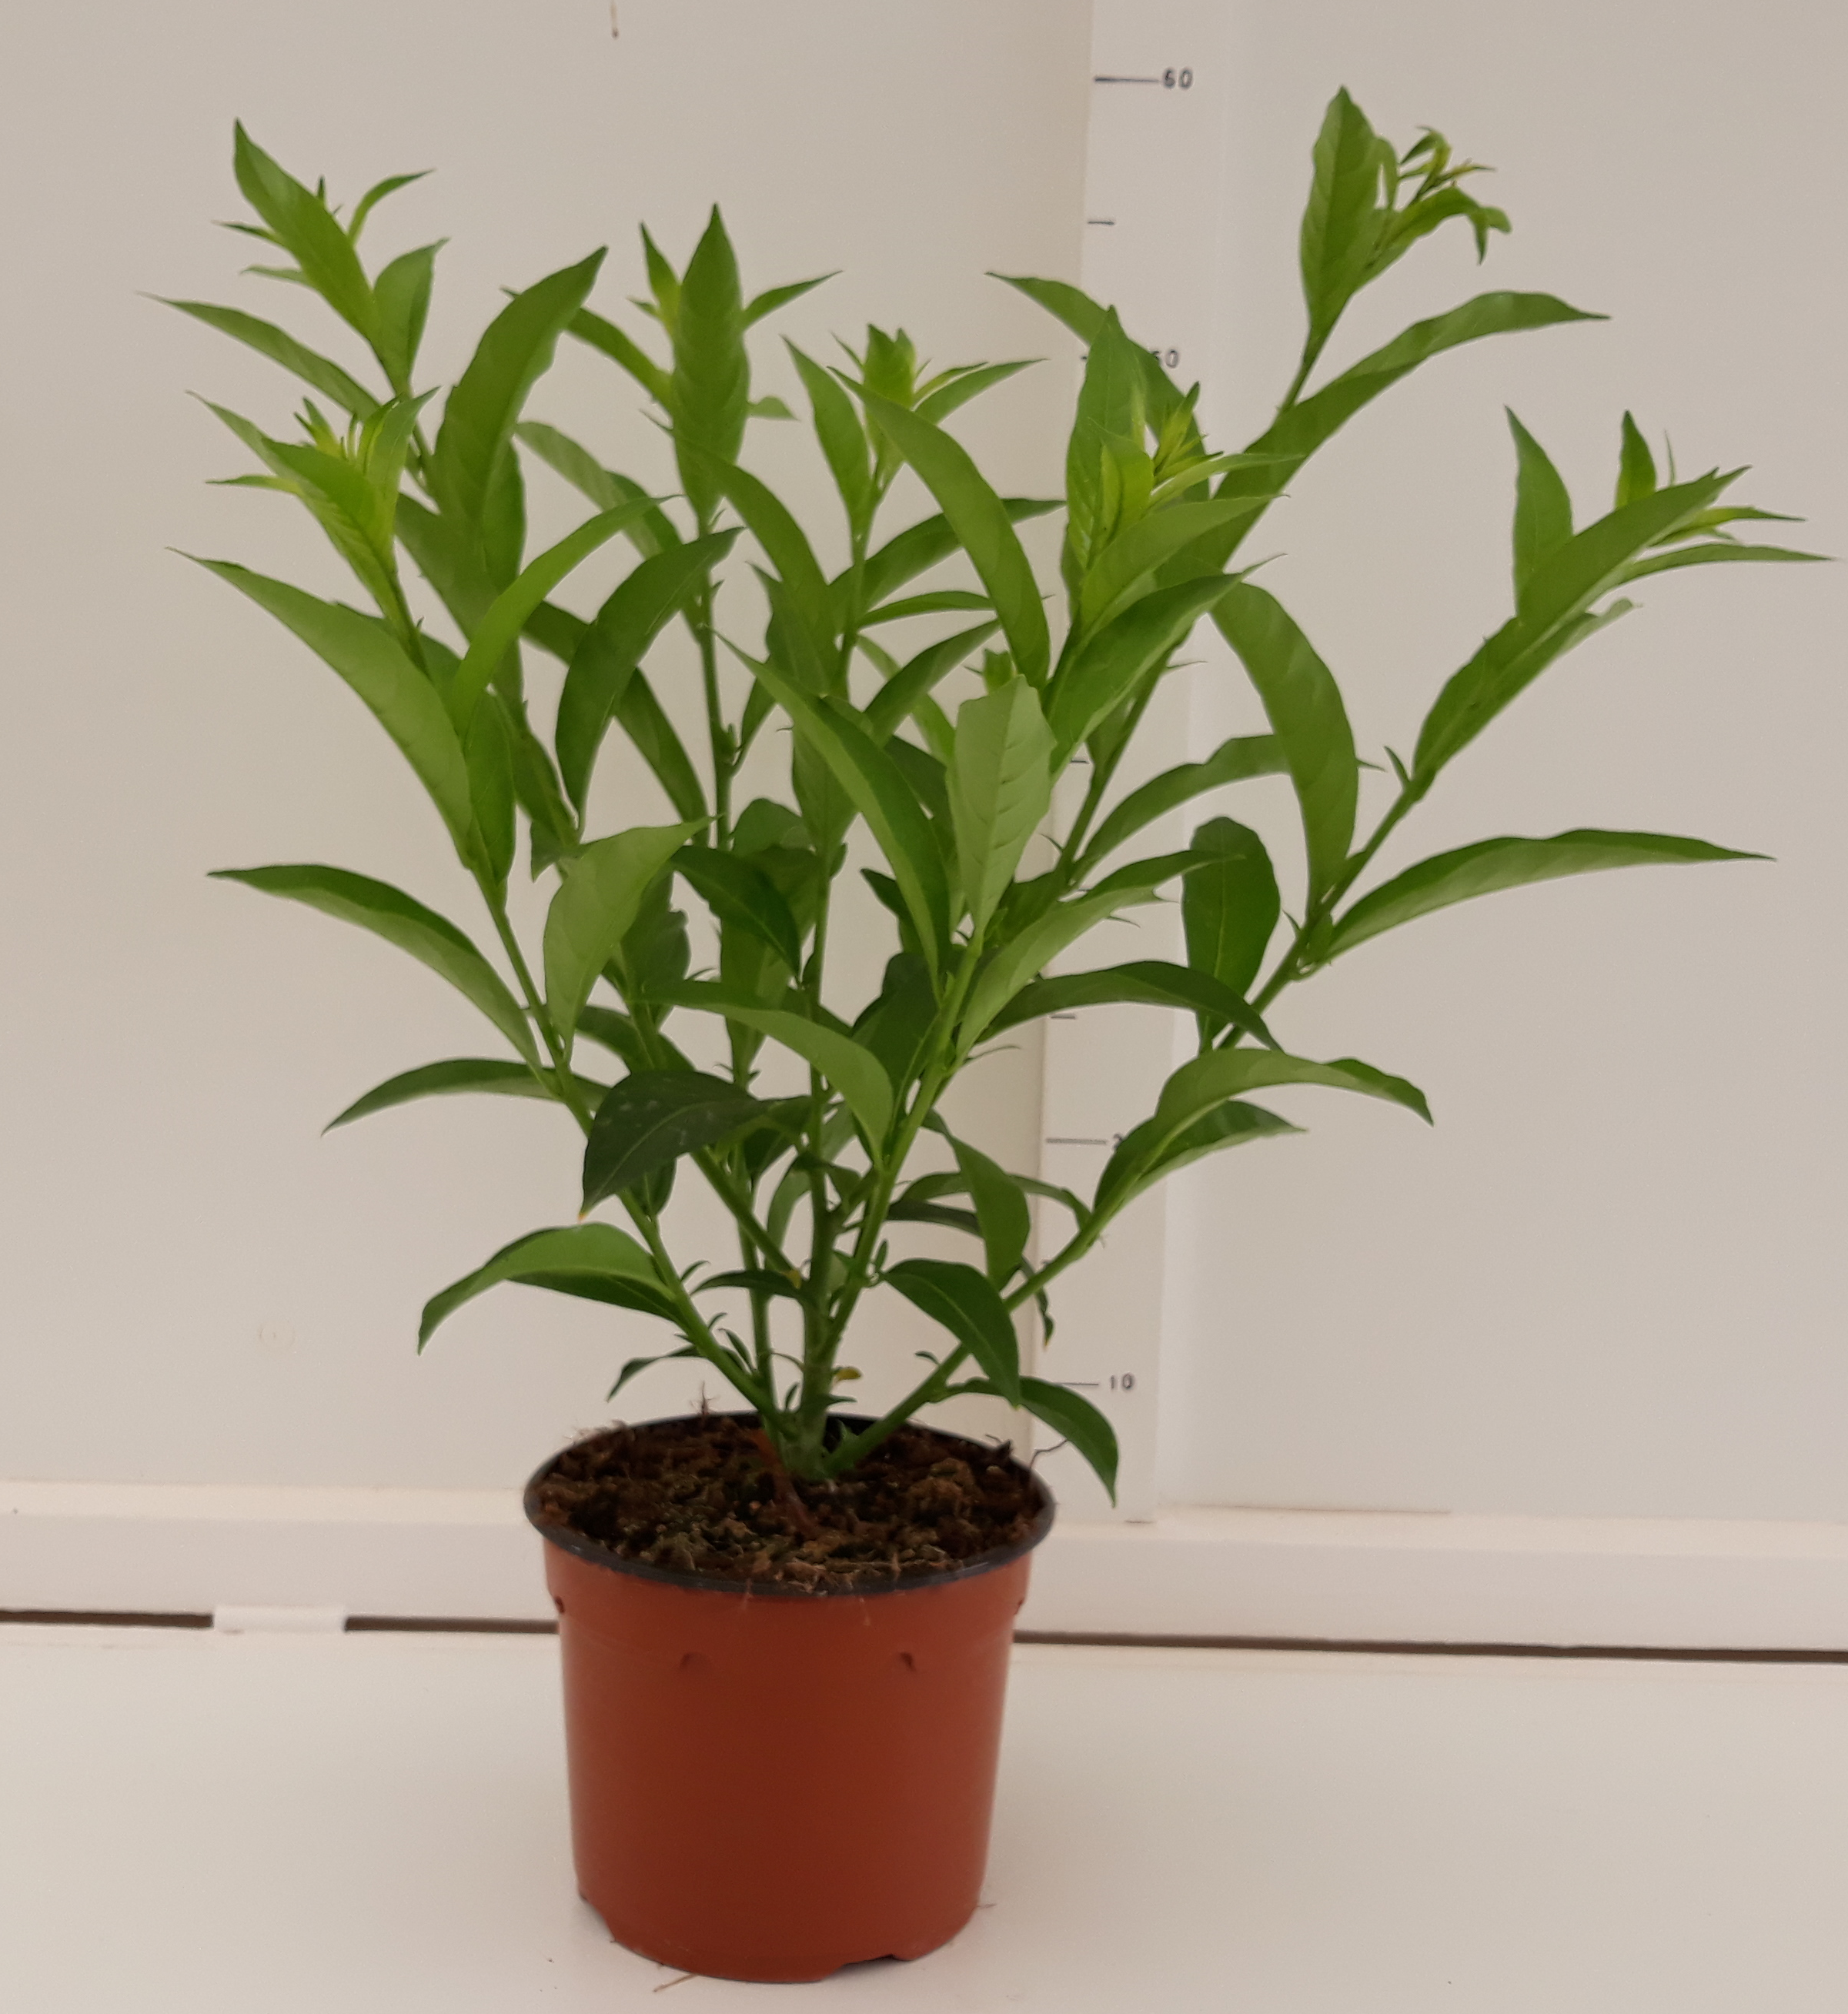 GALAN DE NOCHE M-17 - Planta de flor - Productores de planta ornamental -  Miraplant